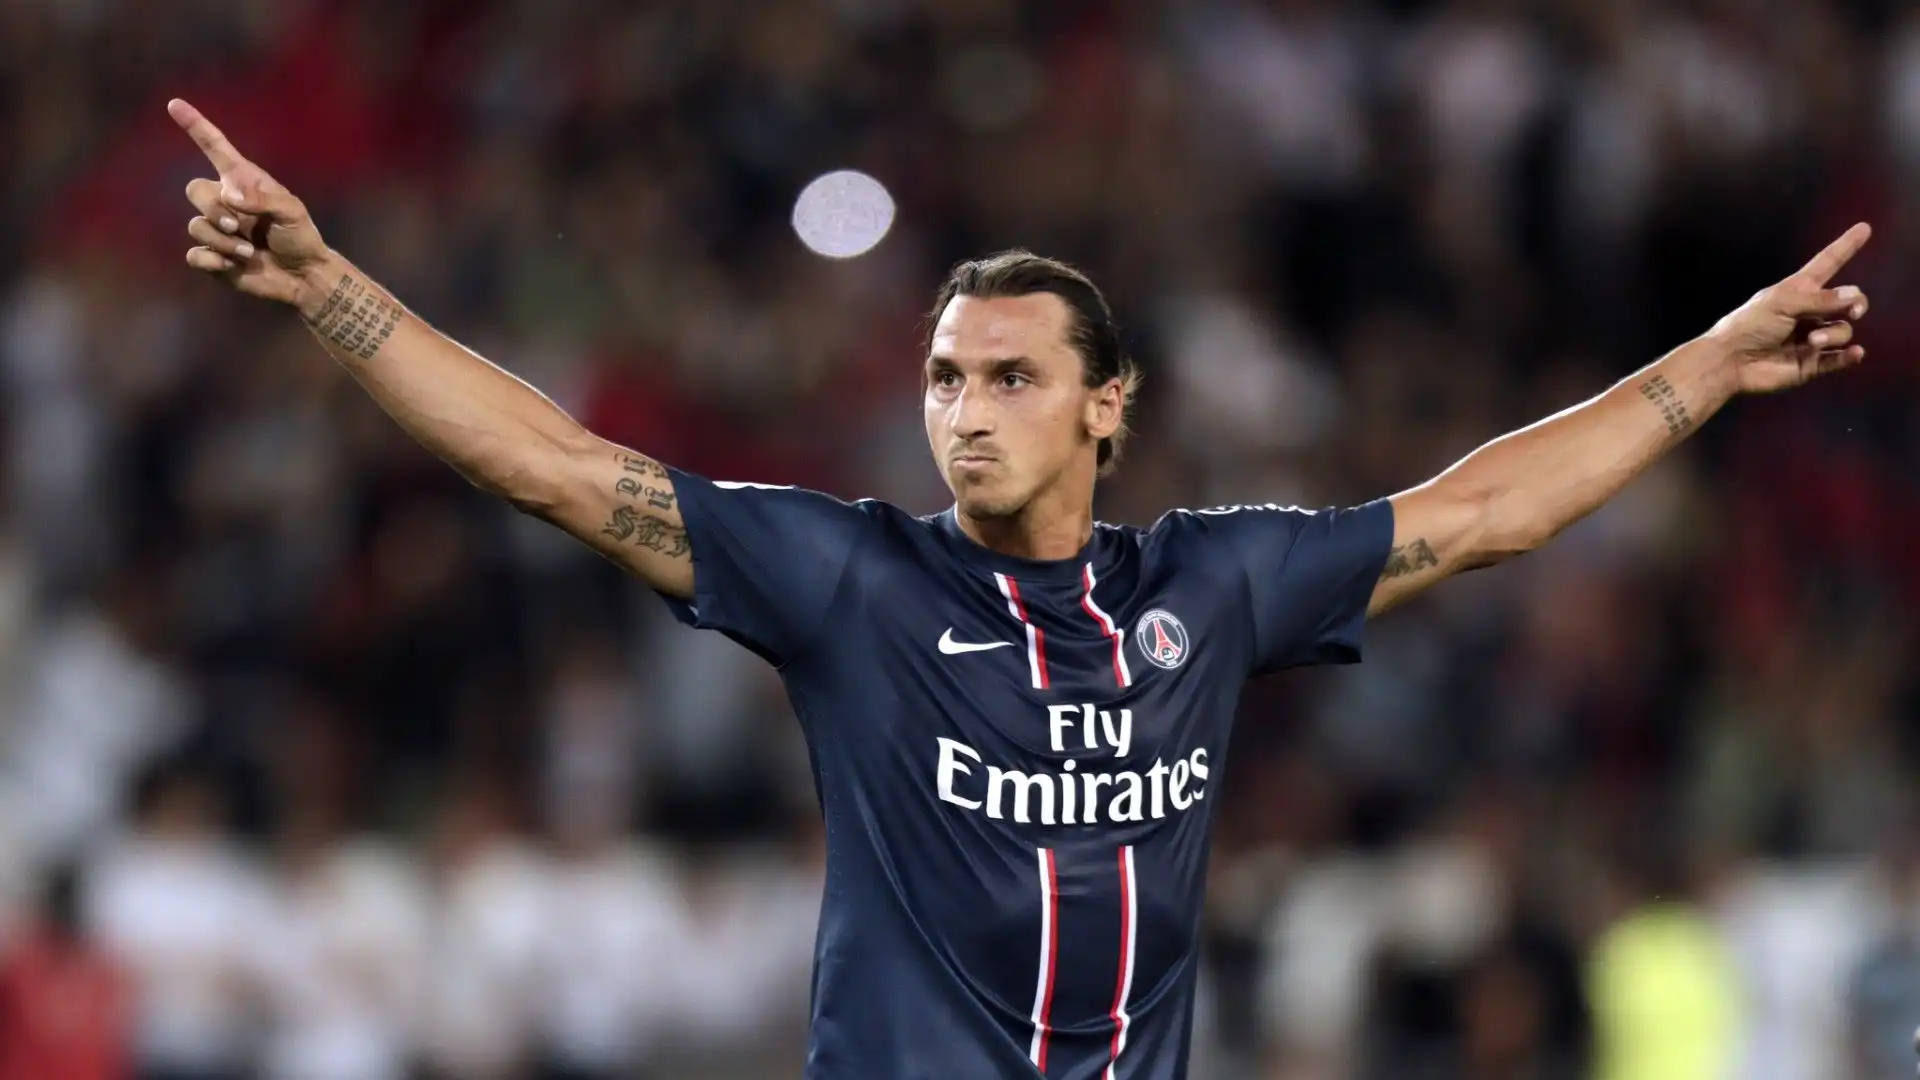 Il Paris Saint Germain ha ingaggiato Ibra a luglio 2012 pagandolo 21 milioni di euro. In Francia Zlatan ha vinto 4 campionati, 3 Supercoppe francesi, 2 Coppe di Francia e 3 Supercoppe di lega francese